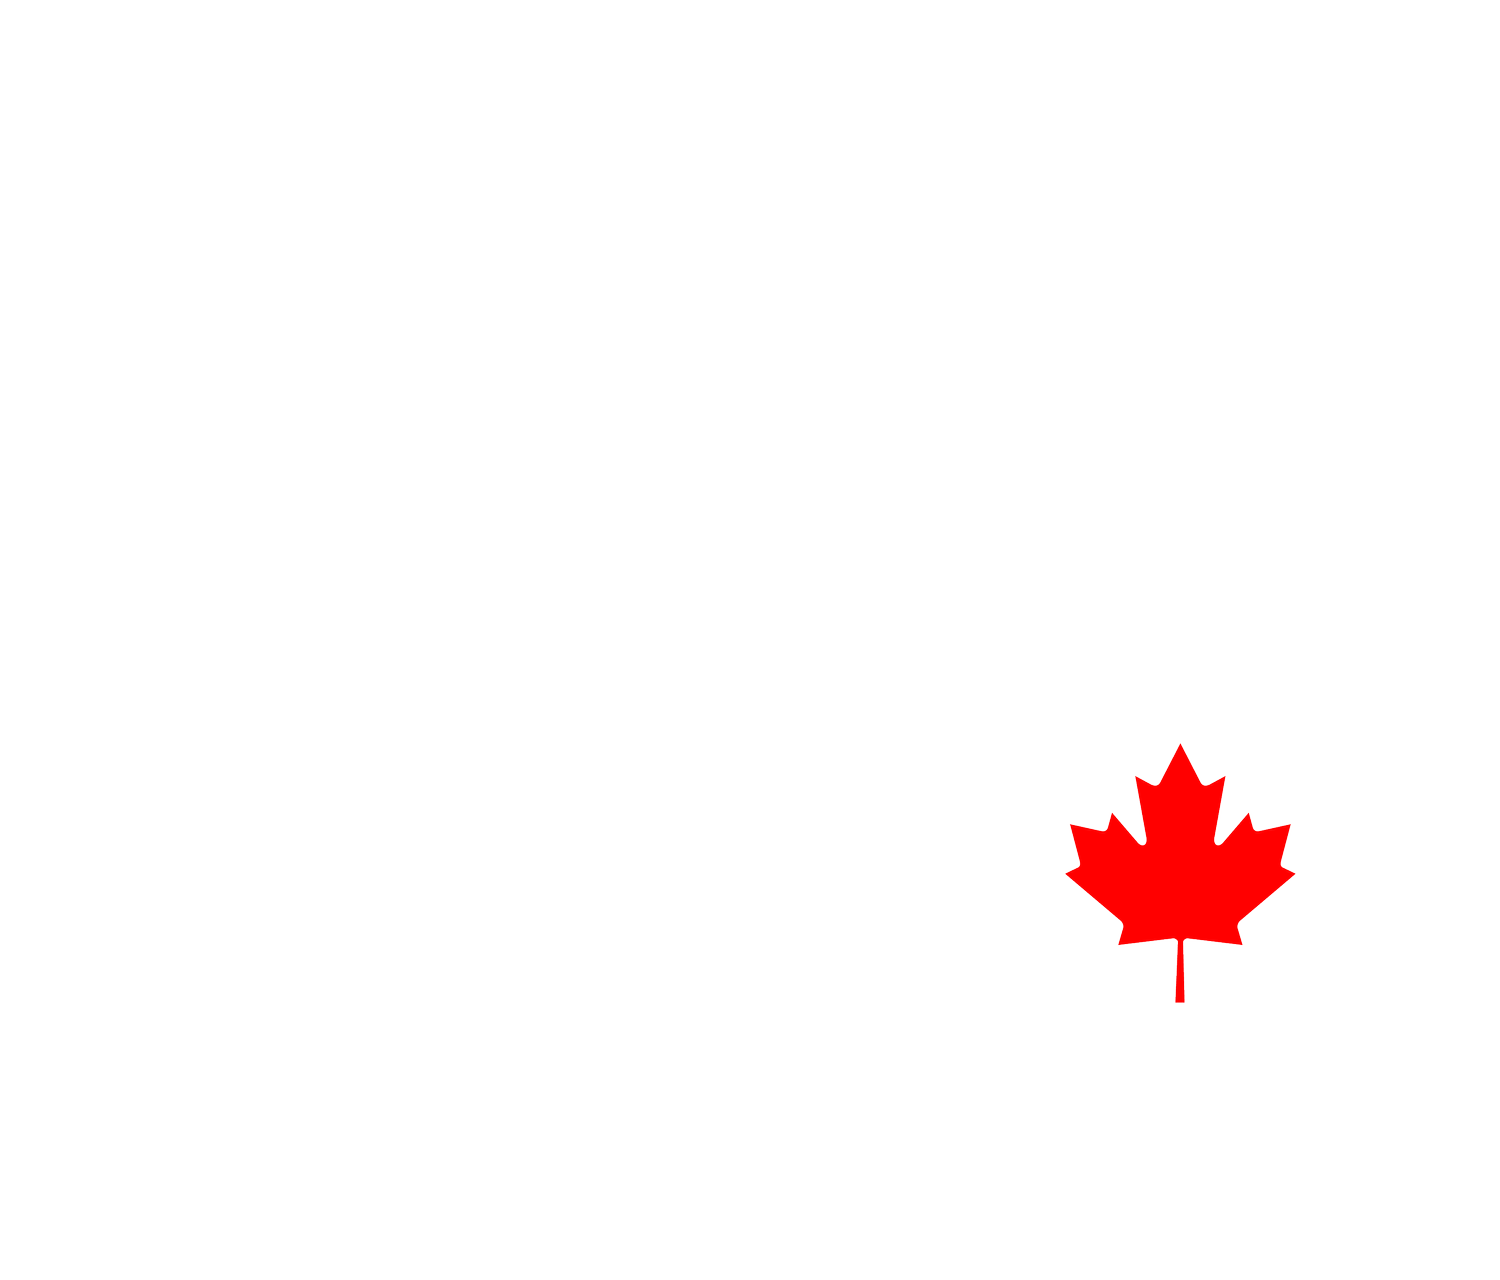 RIVAL AXE THROWING